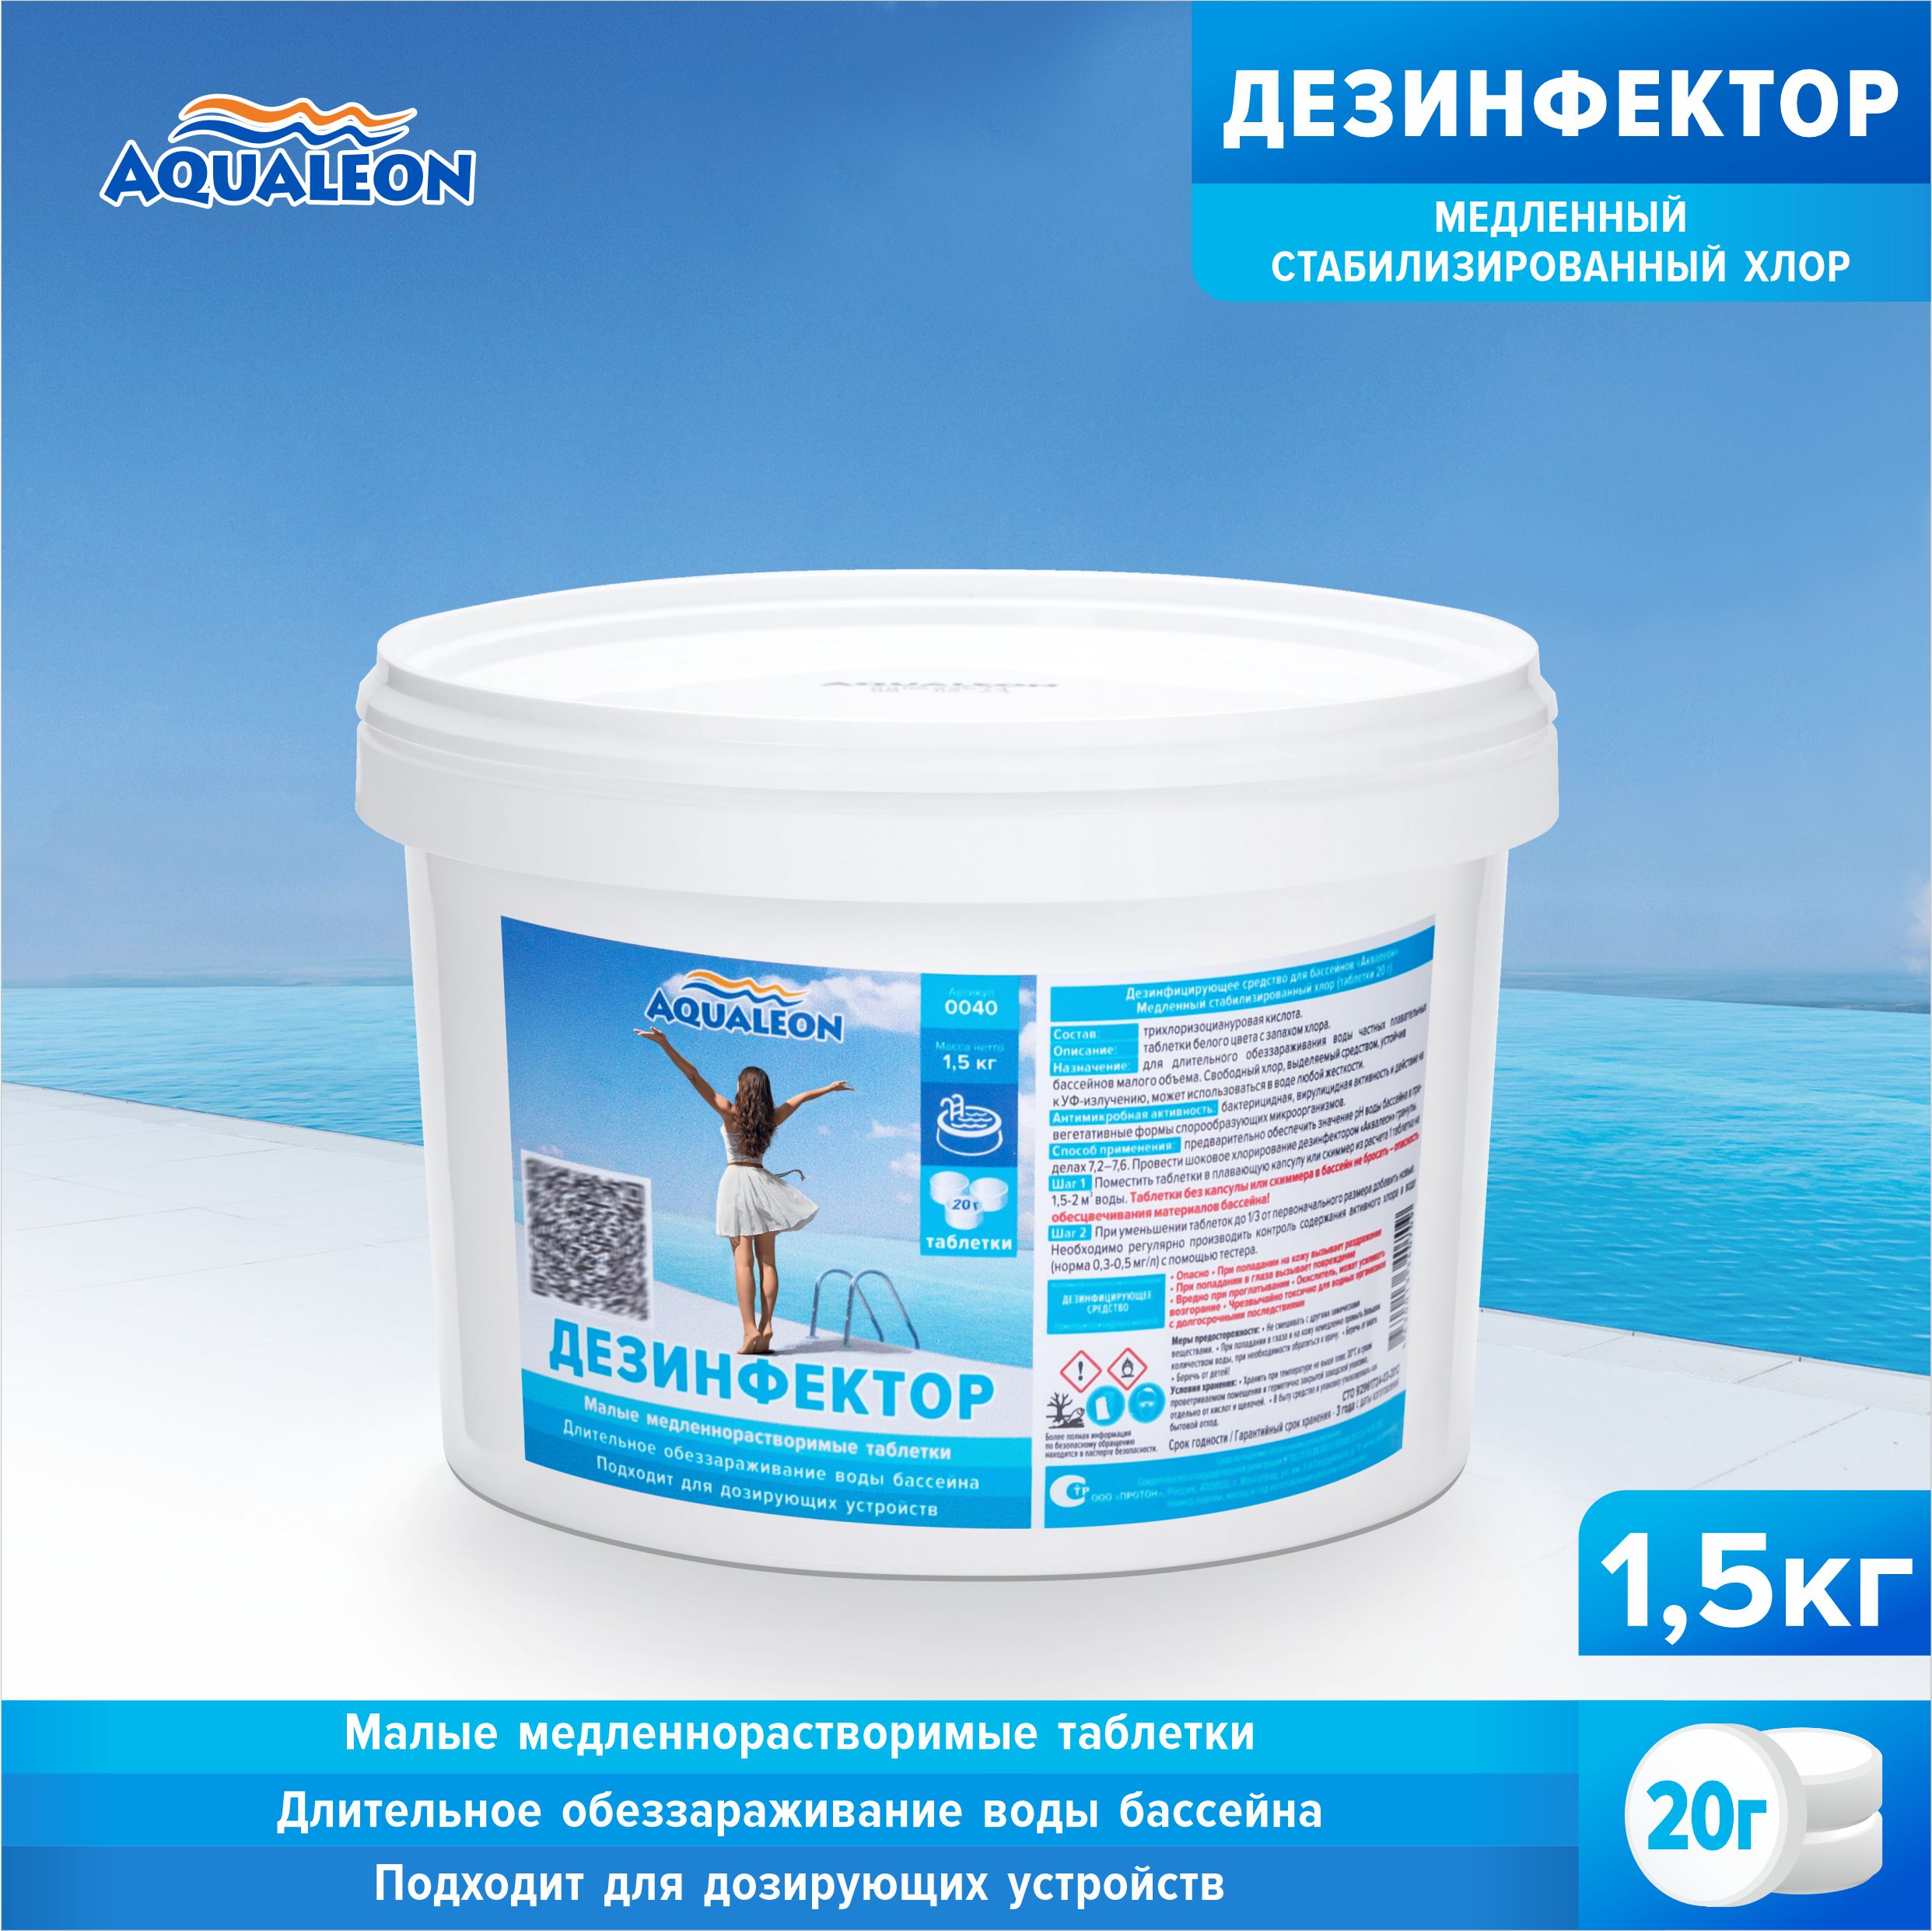 Медленный хлор для бассейна (МСХ) Aqualeon таблетки по 20 гр. 1,5 кг